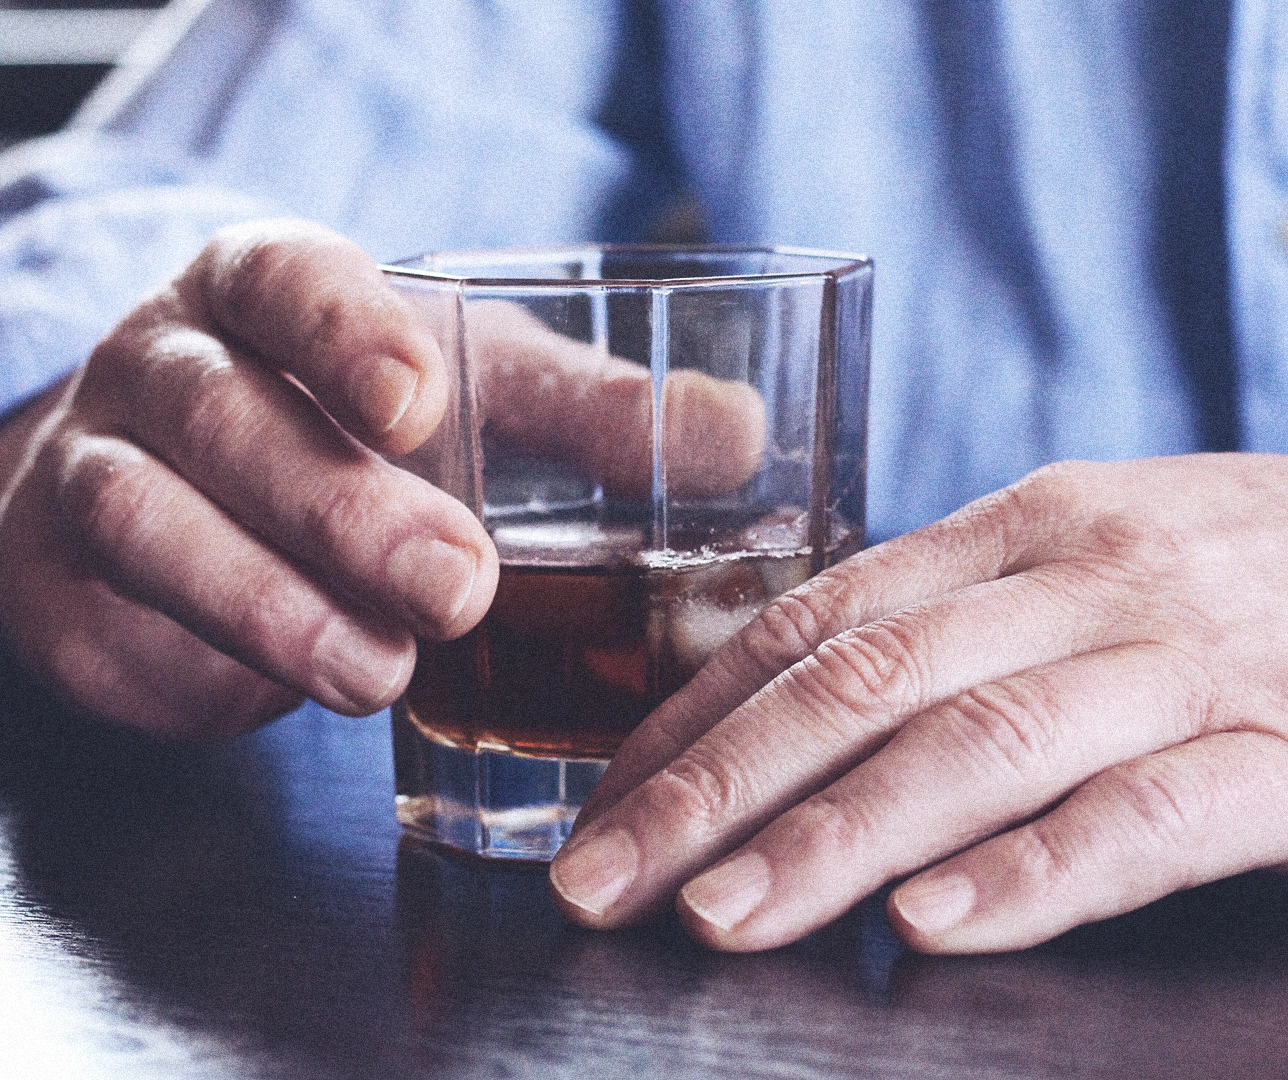 Imagen de un vaso de una bebida alcohólica sujetada por las manos de una persona.